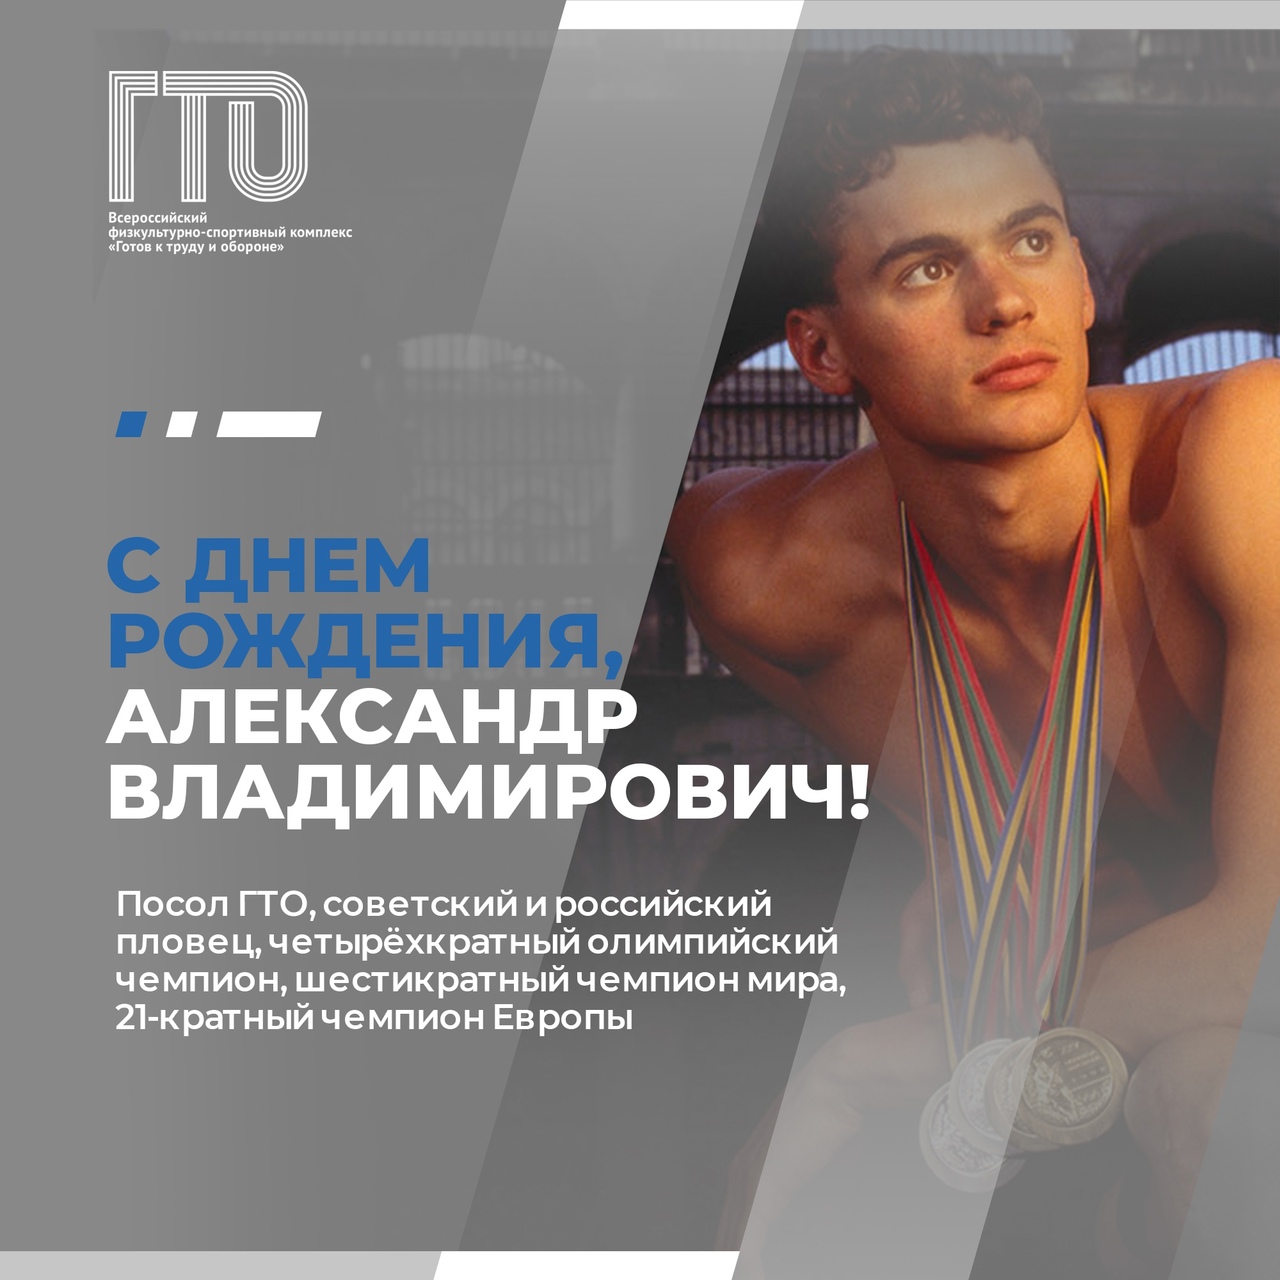 Олимпийский Чемпион и Посол ГТО Александр Владимирович Попов сегодня отмечает день рождения!.